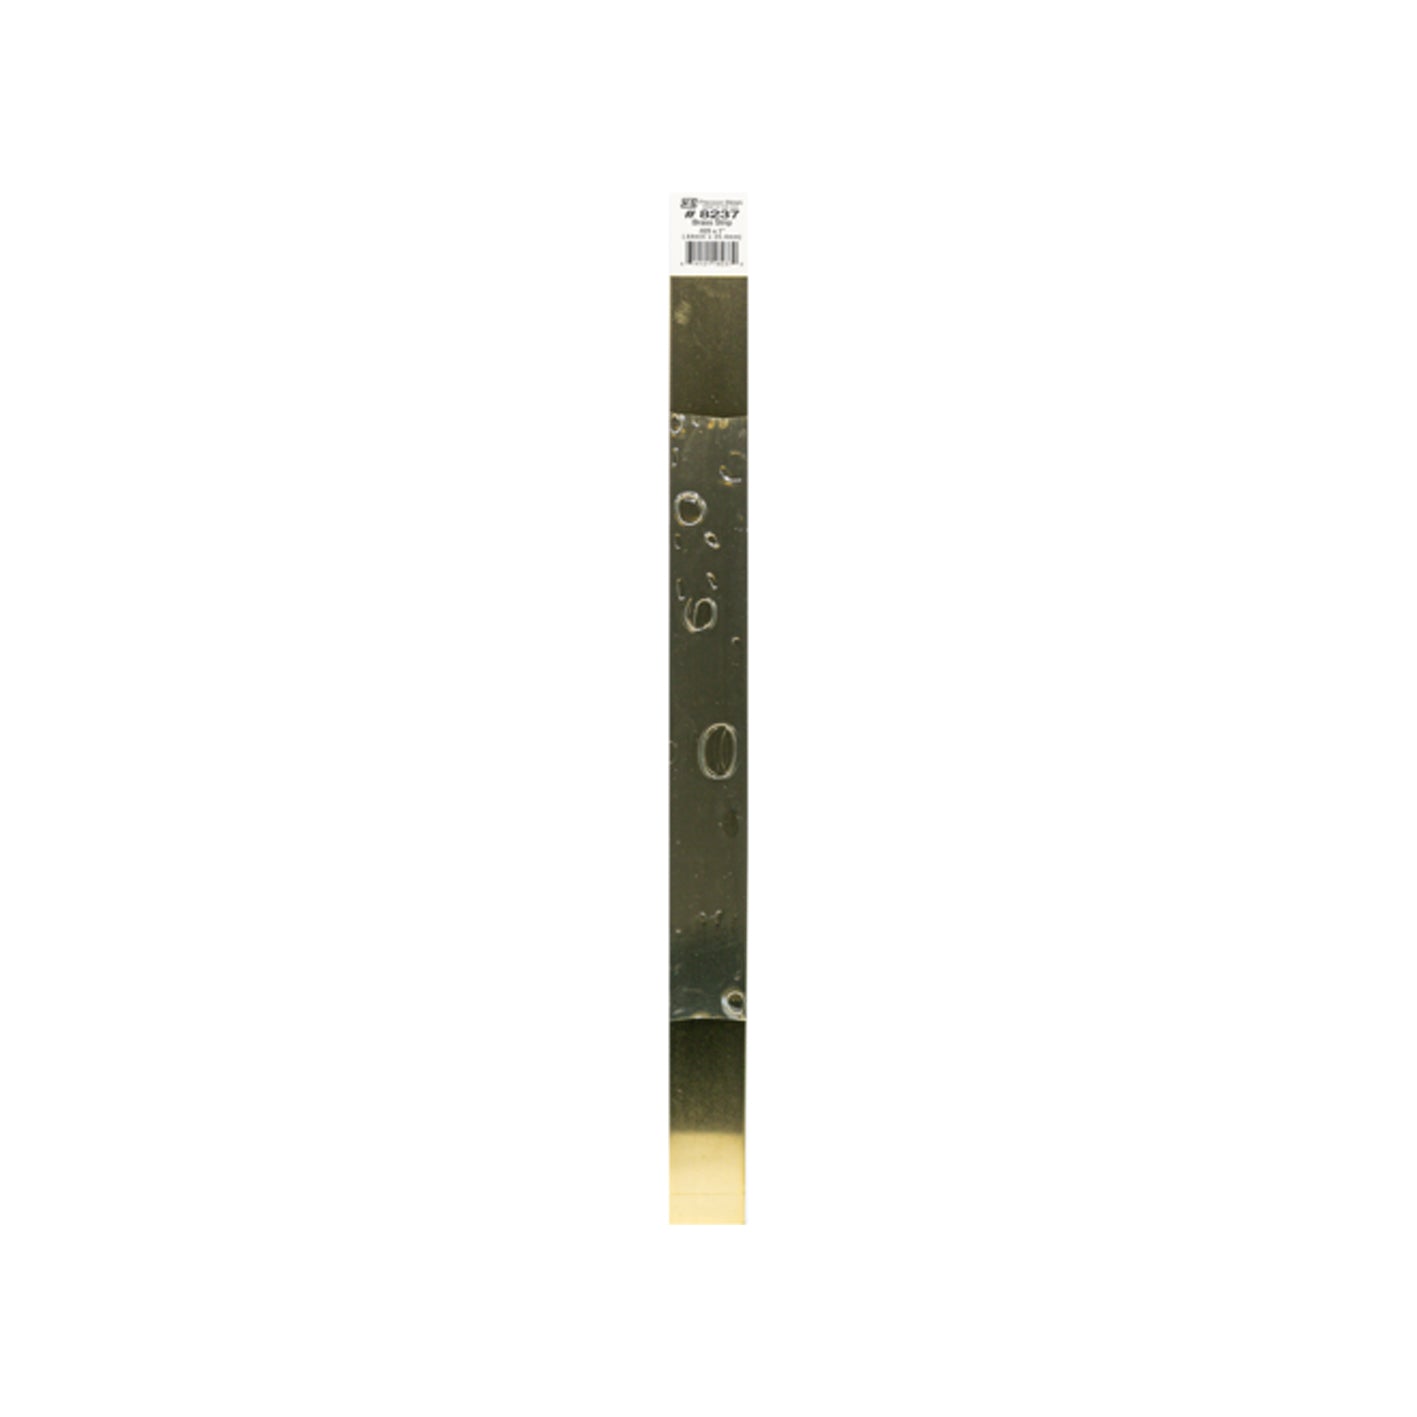 K&S™ Brass Strip: 0.025" Thick x 1" Wide x 12" Long (1 Piece)